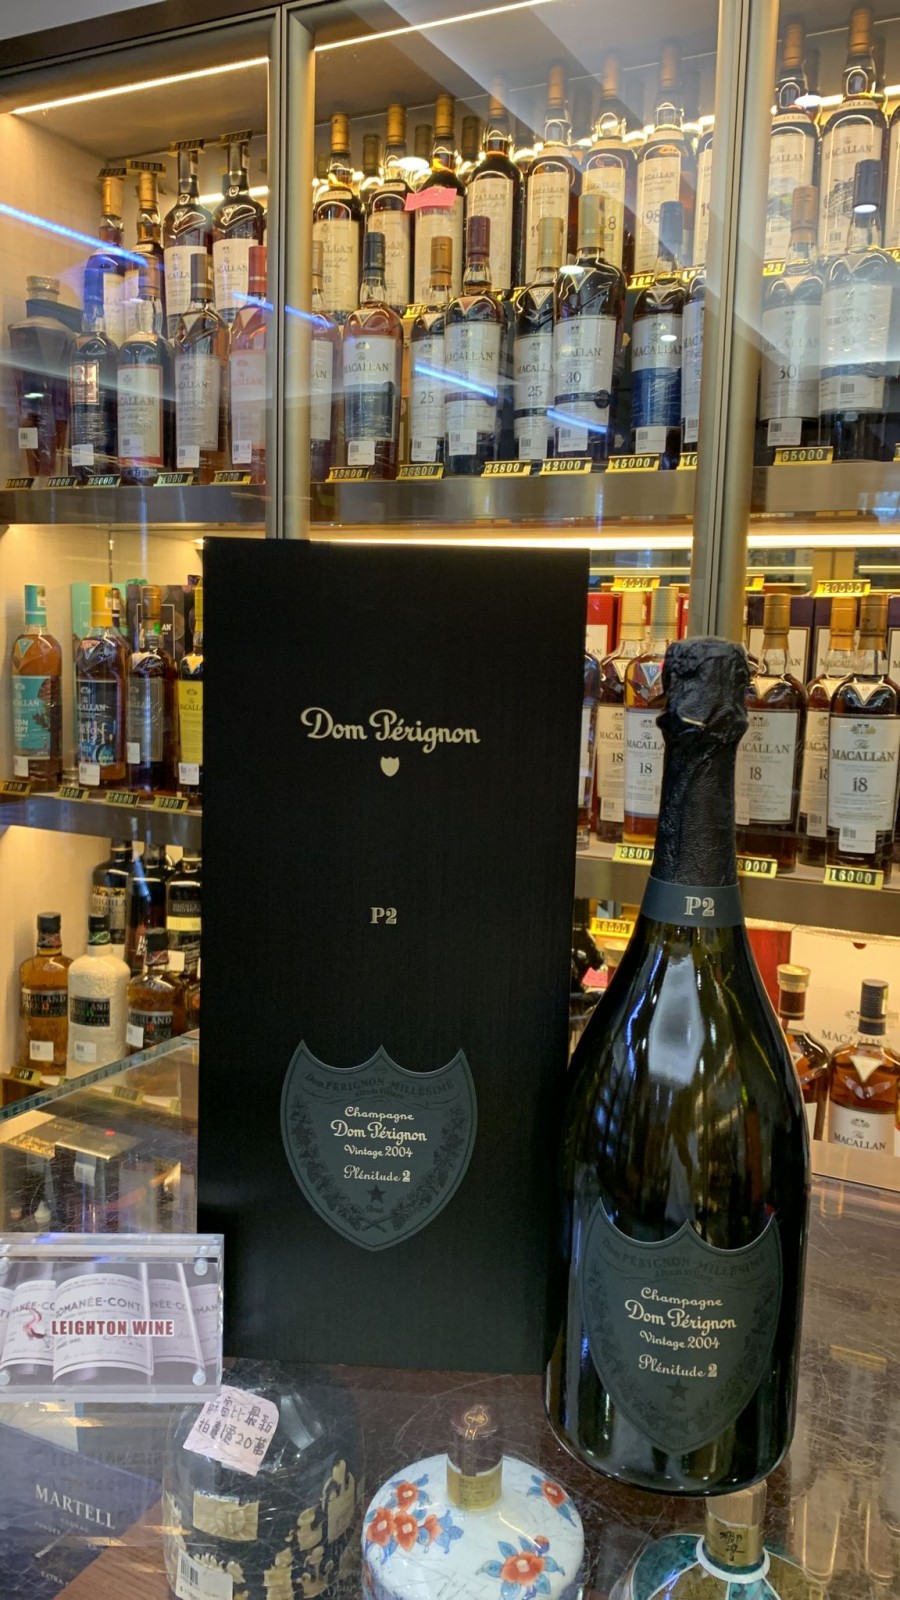 Dom Perignon P2 Plenitude Brut Champagne 2004